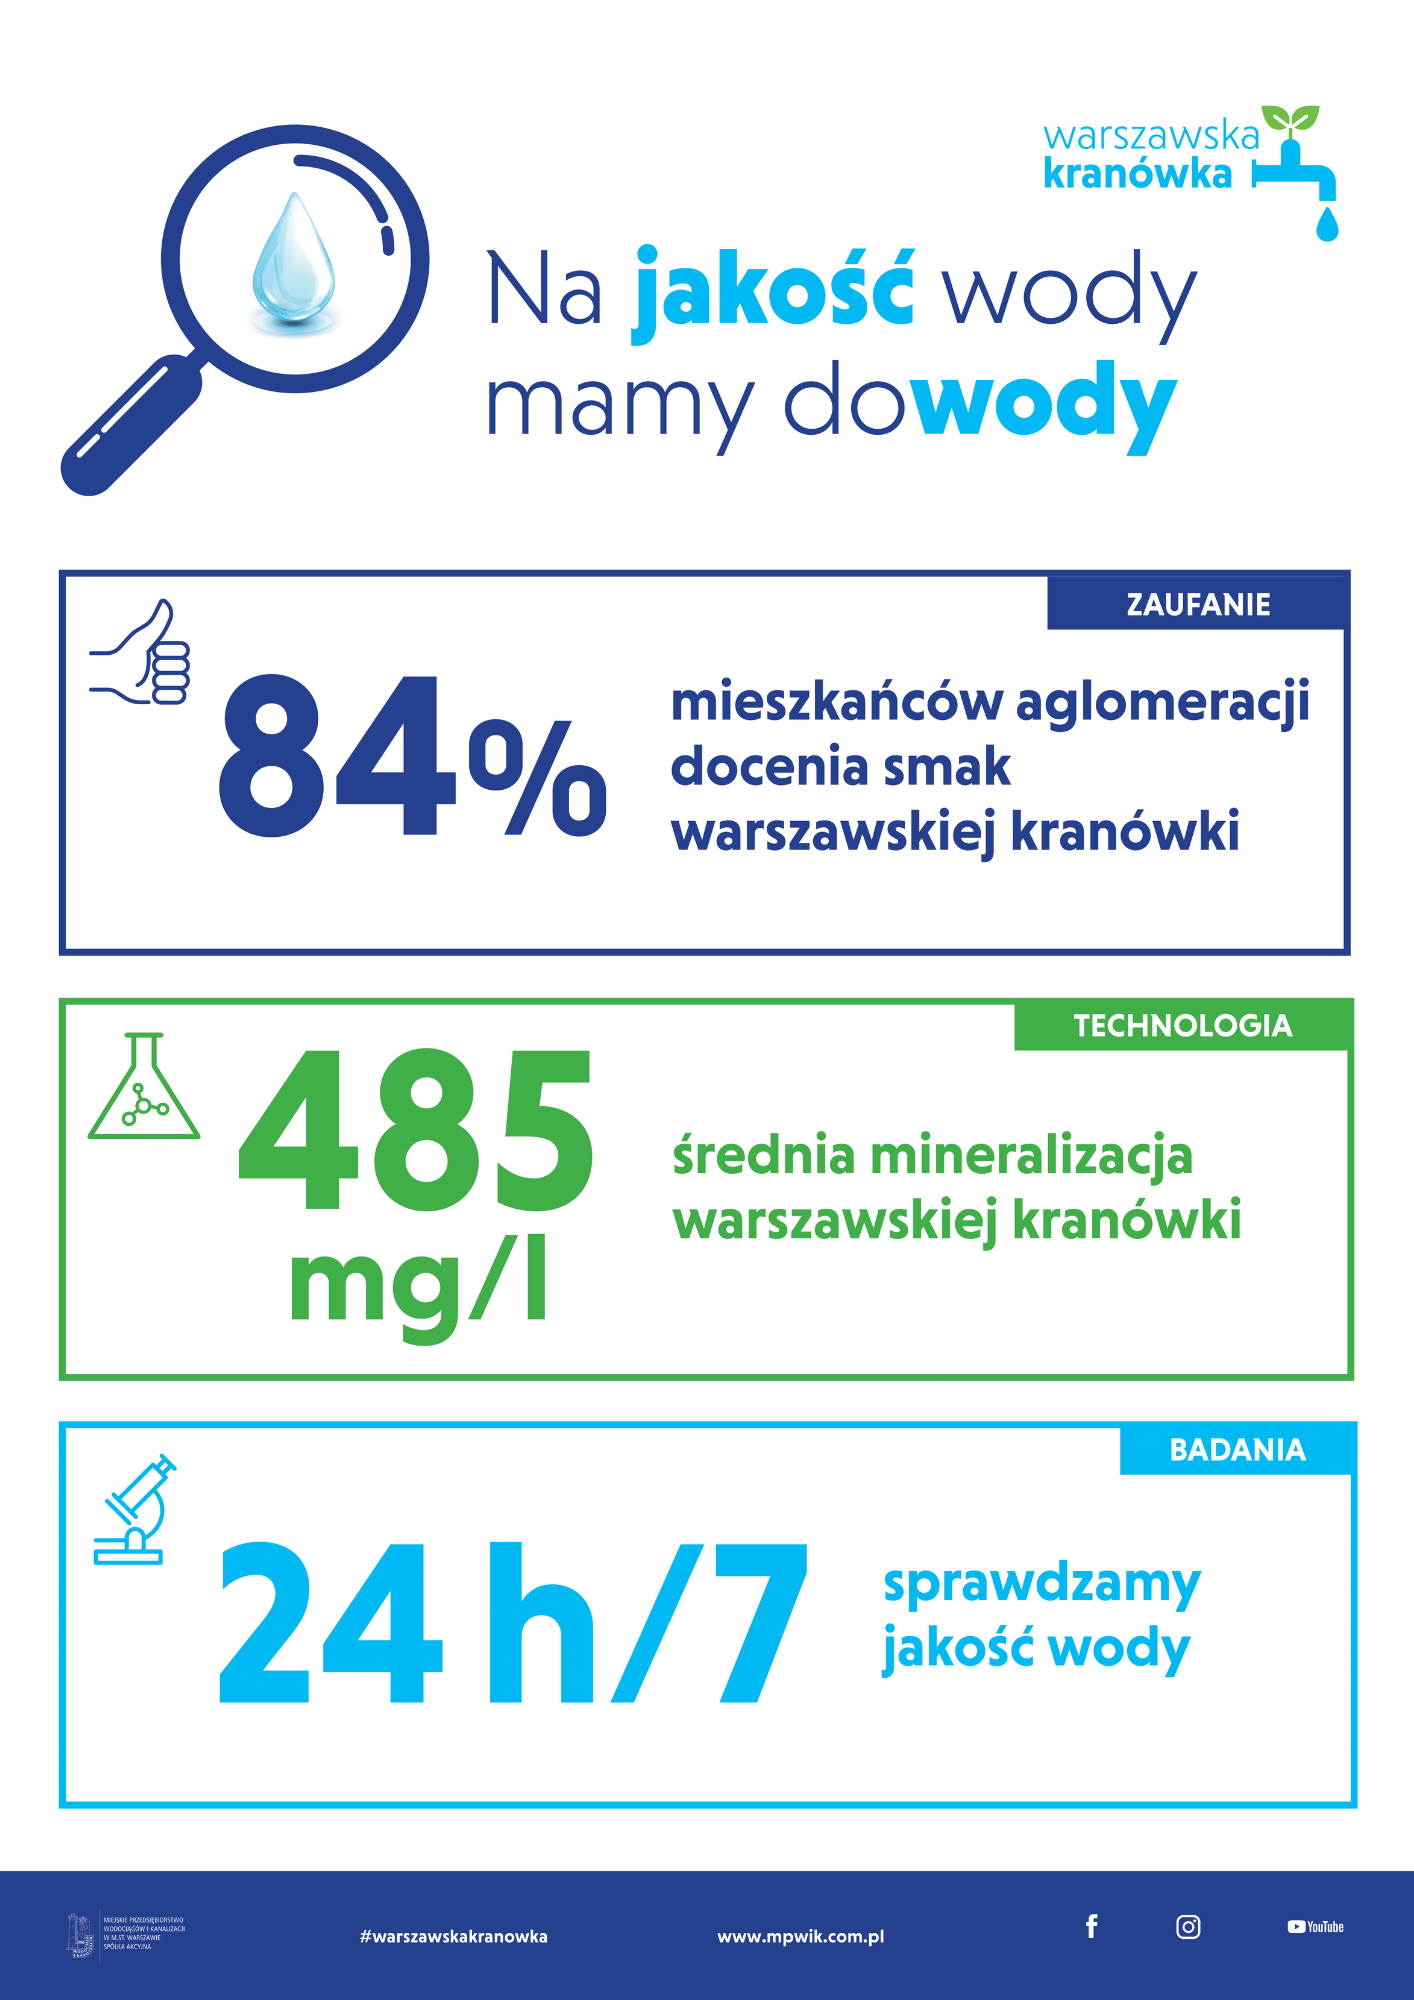 infografika potwierdzająca wysoką jakość wody z kranu, 84% mieszkańców aglomeracji docenia smak warszawskiej kranówki, średnio 485 miligramów minerałów w litrze warszawskiej kranówki, kontrola jakości wody prowadzona 24 godziny na dobę przez 7 dni w tygodniu